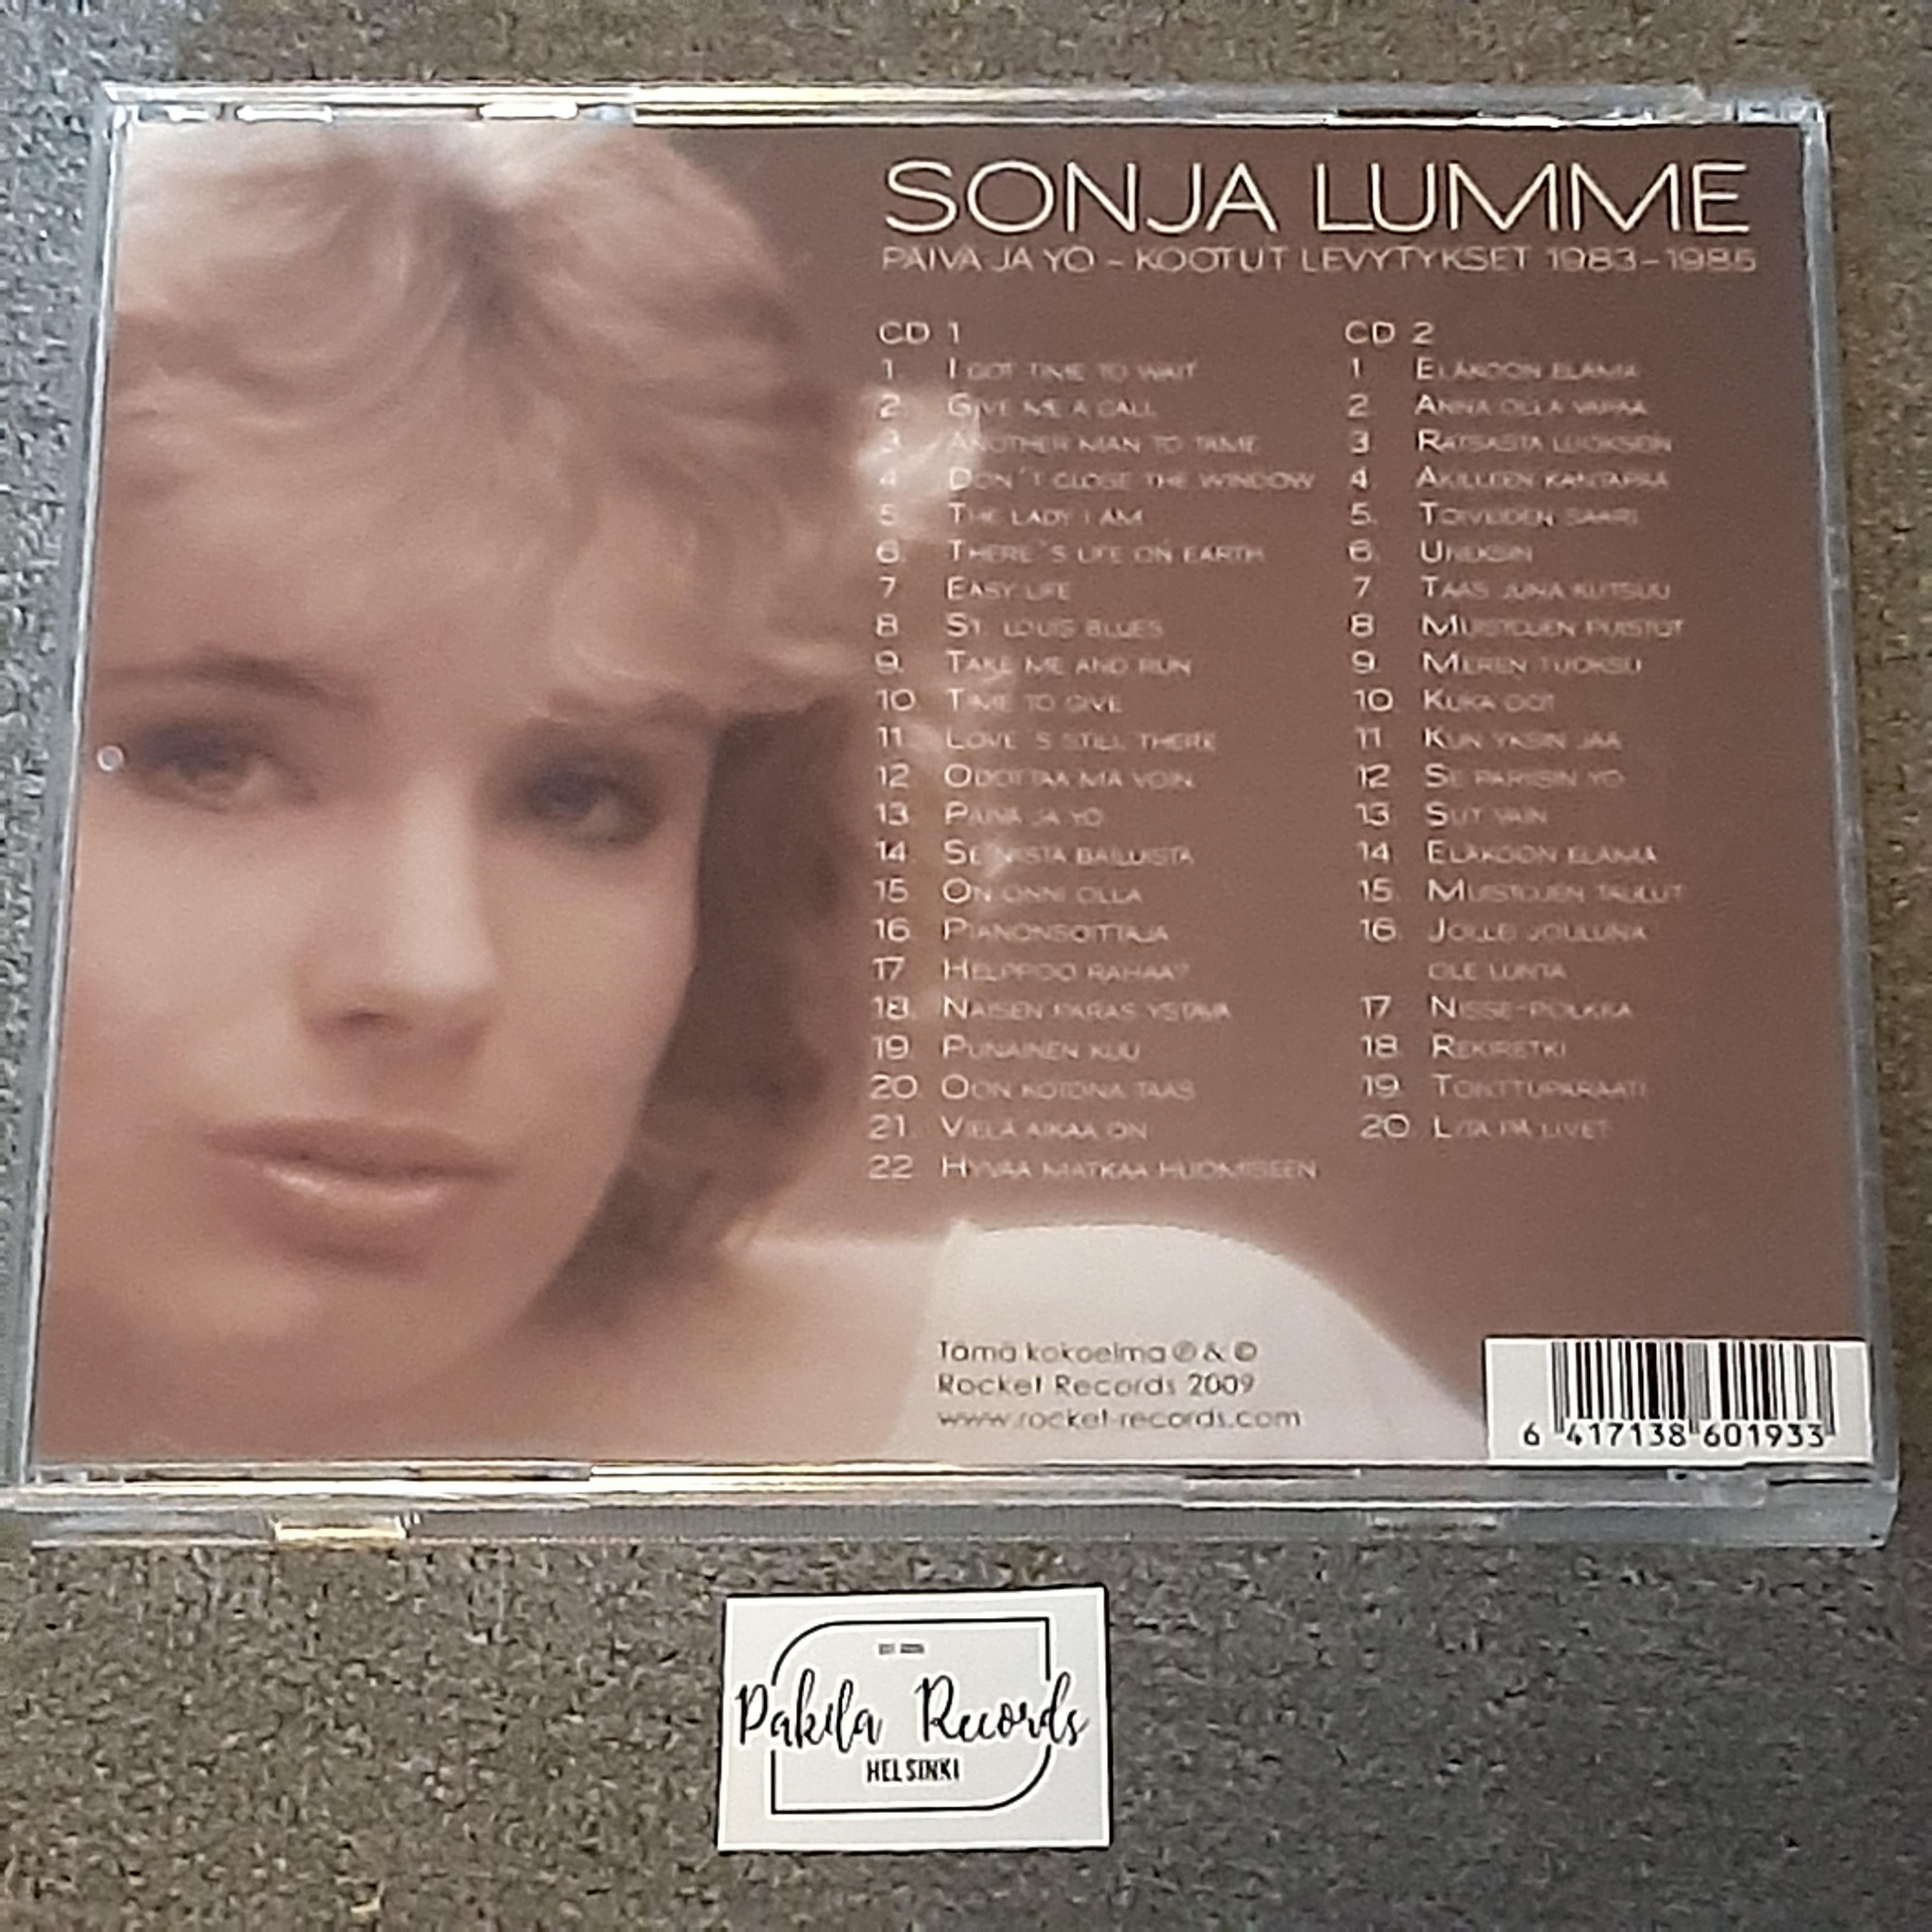 Sonja Lumme - Päivä ja Yö, Kootut levytykset 1983-1985 - 2 CD (käytetty)